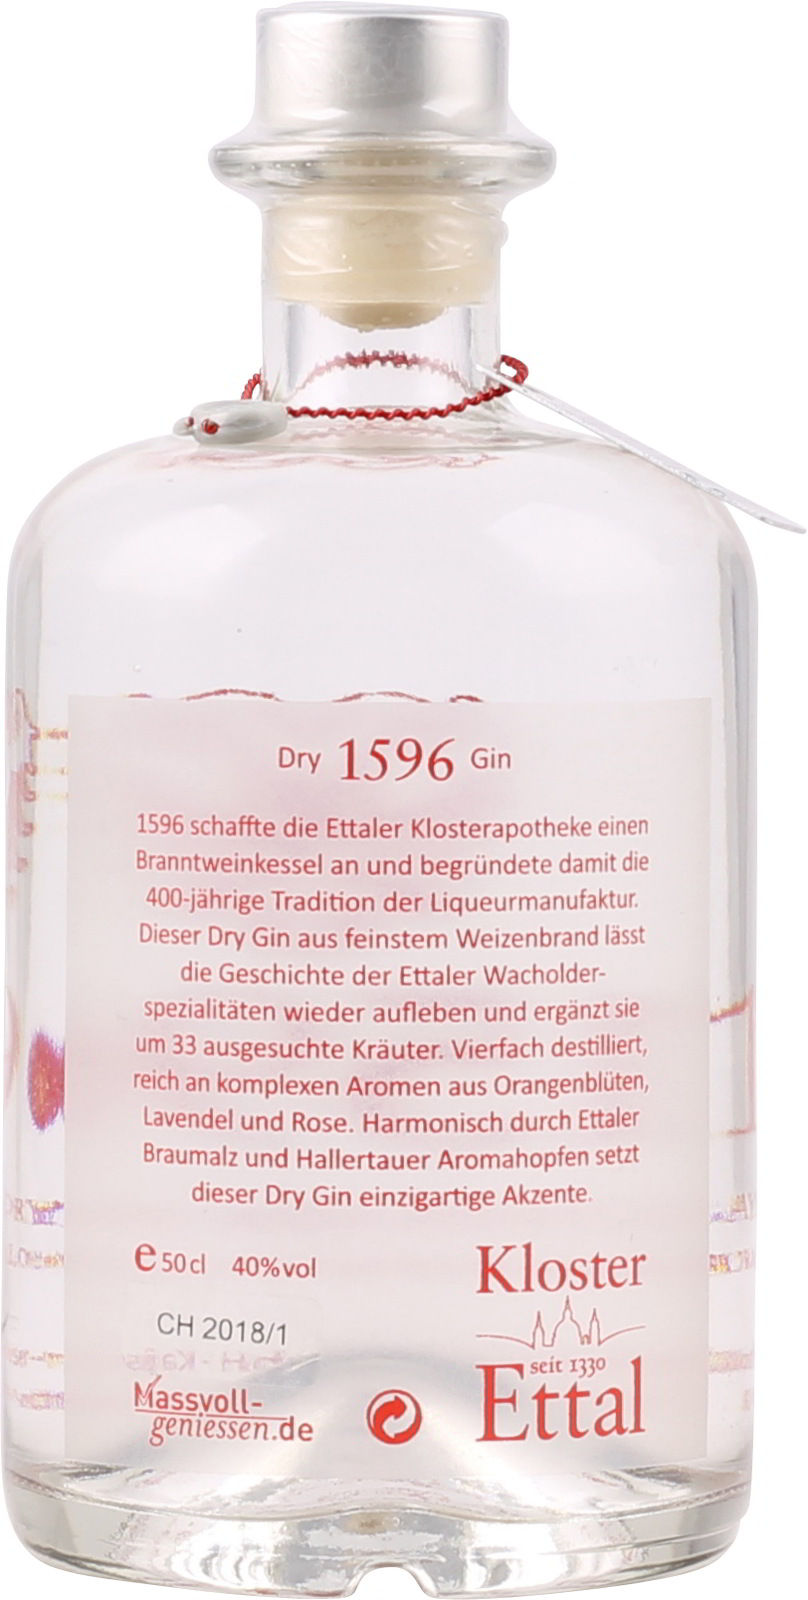 Ettaler % Liter 0,5 Gin Dry Bayerischer 40 1596 ei Vol.